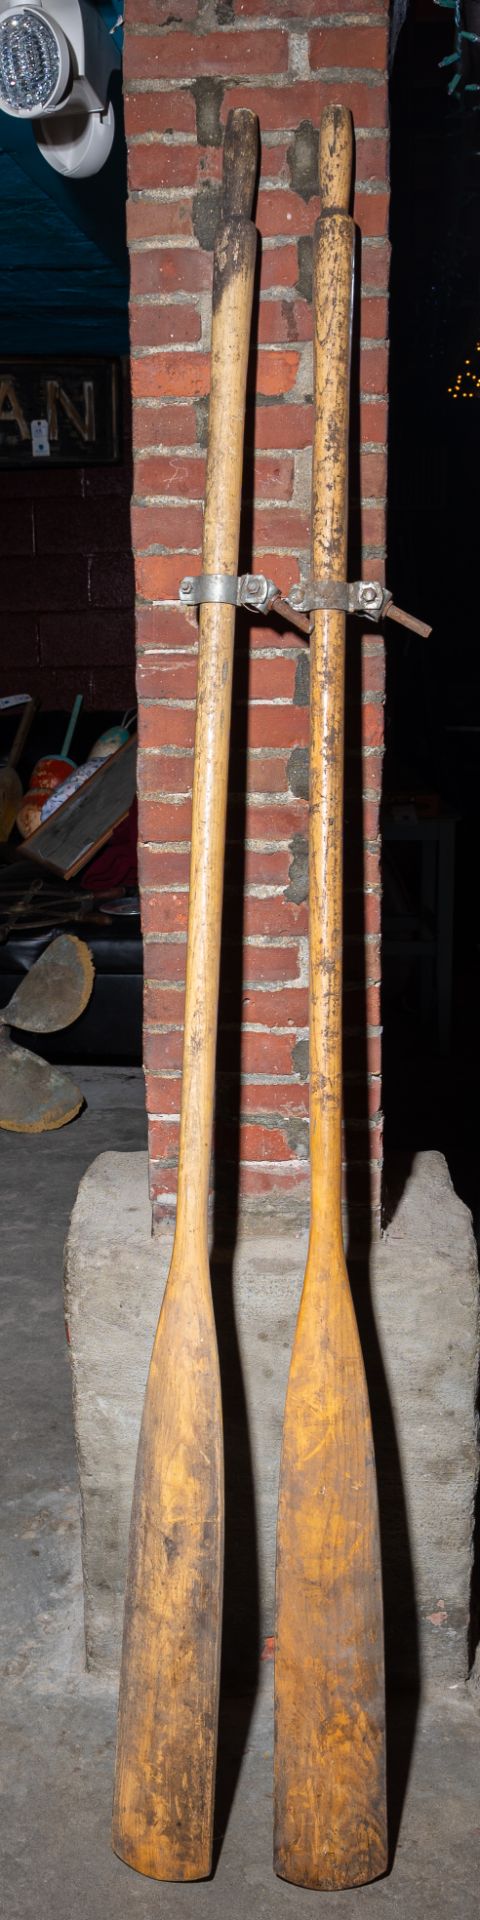 (2) Wood Oars With Oar Locks 78"